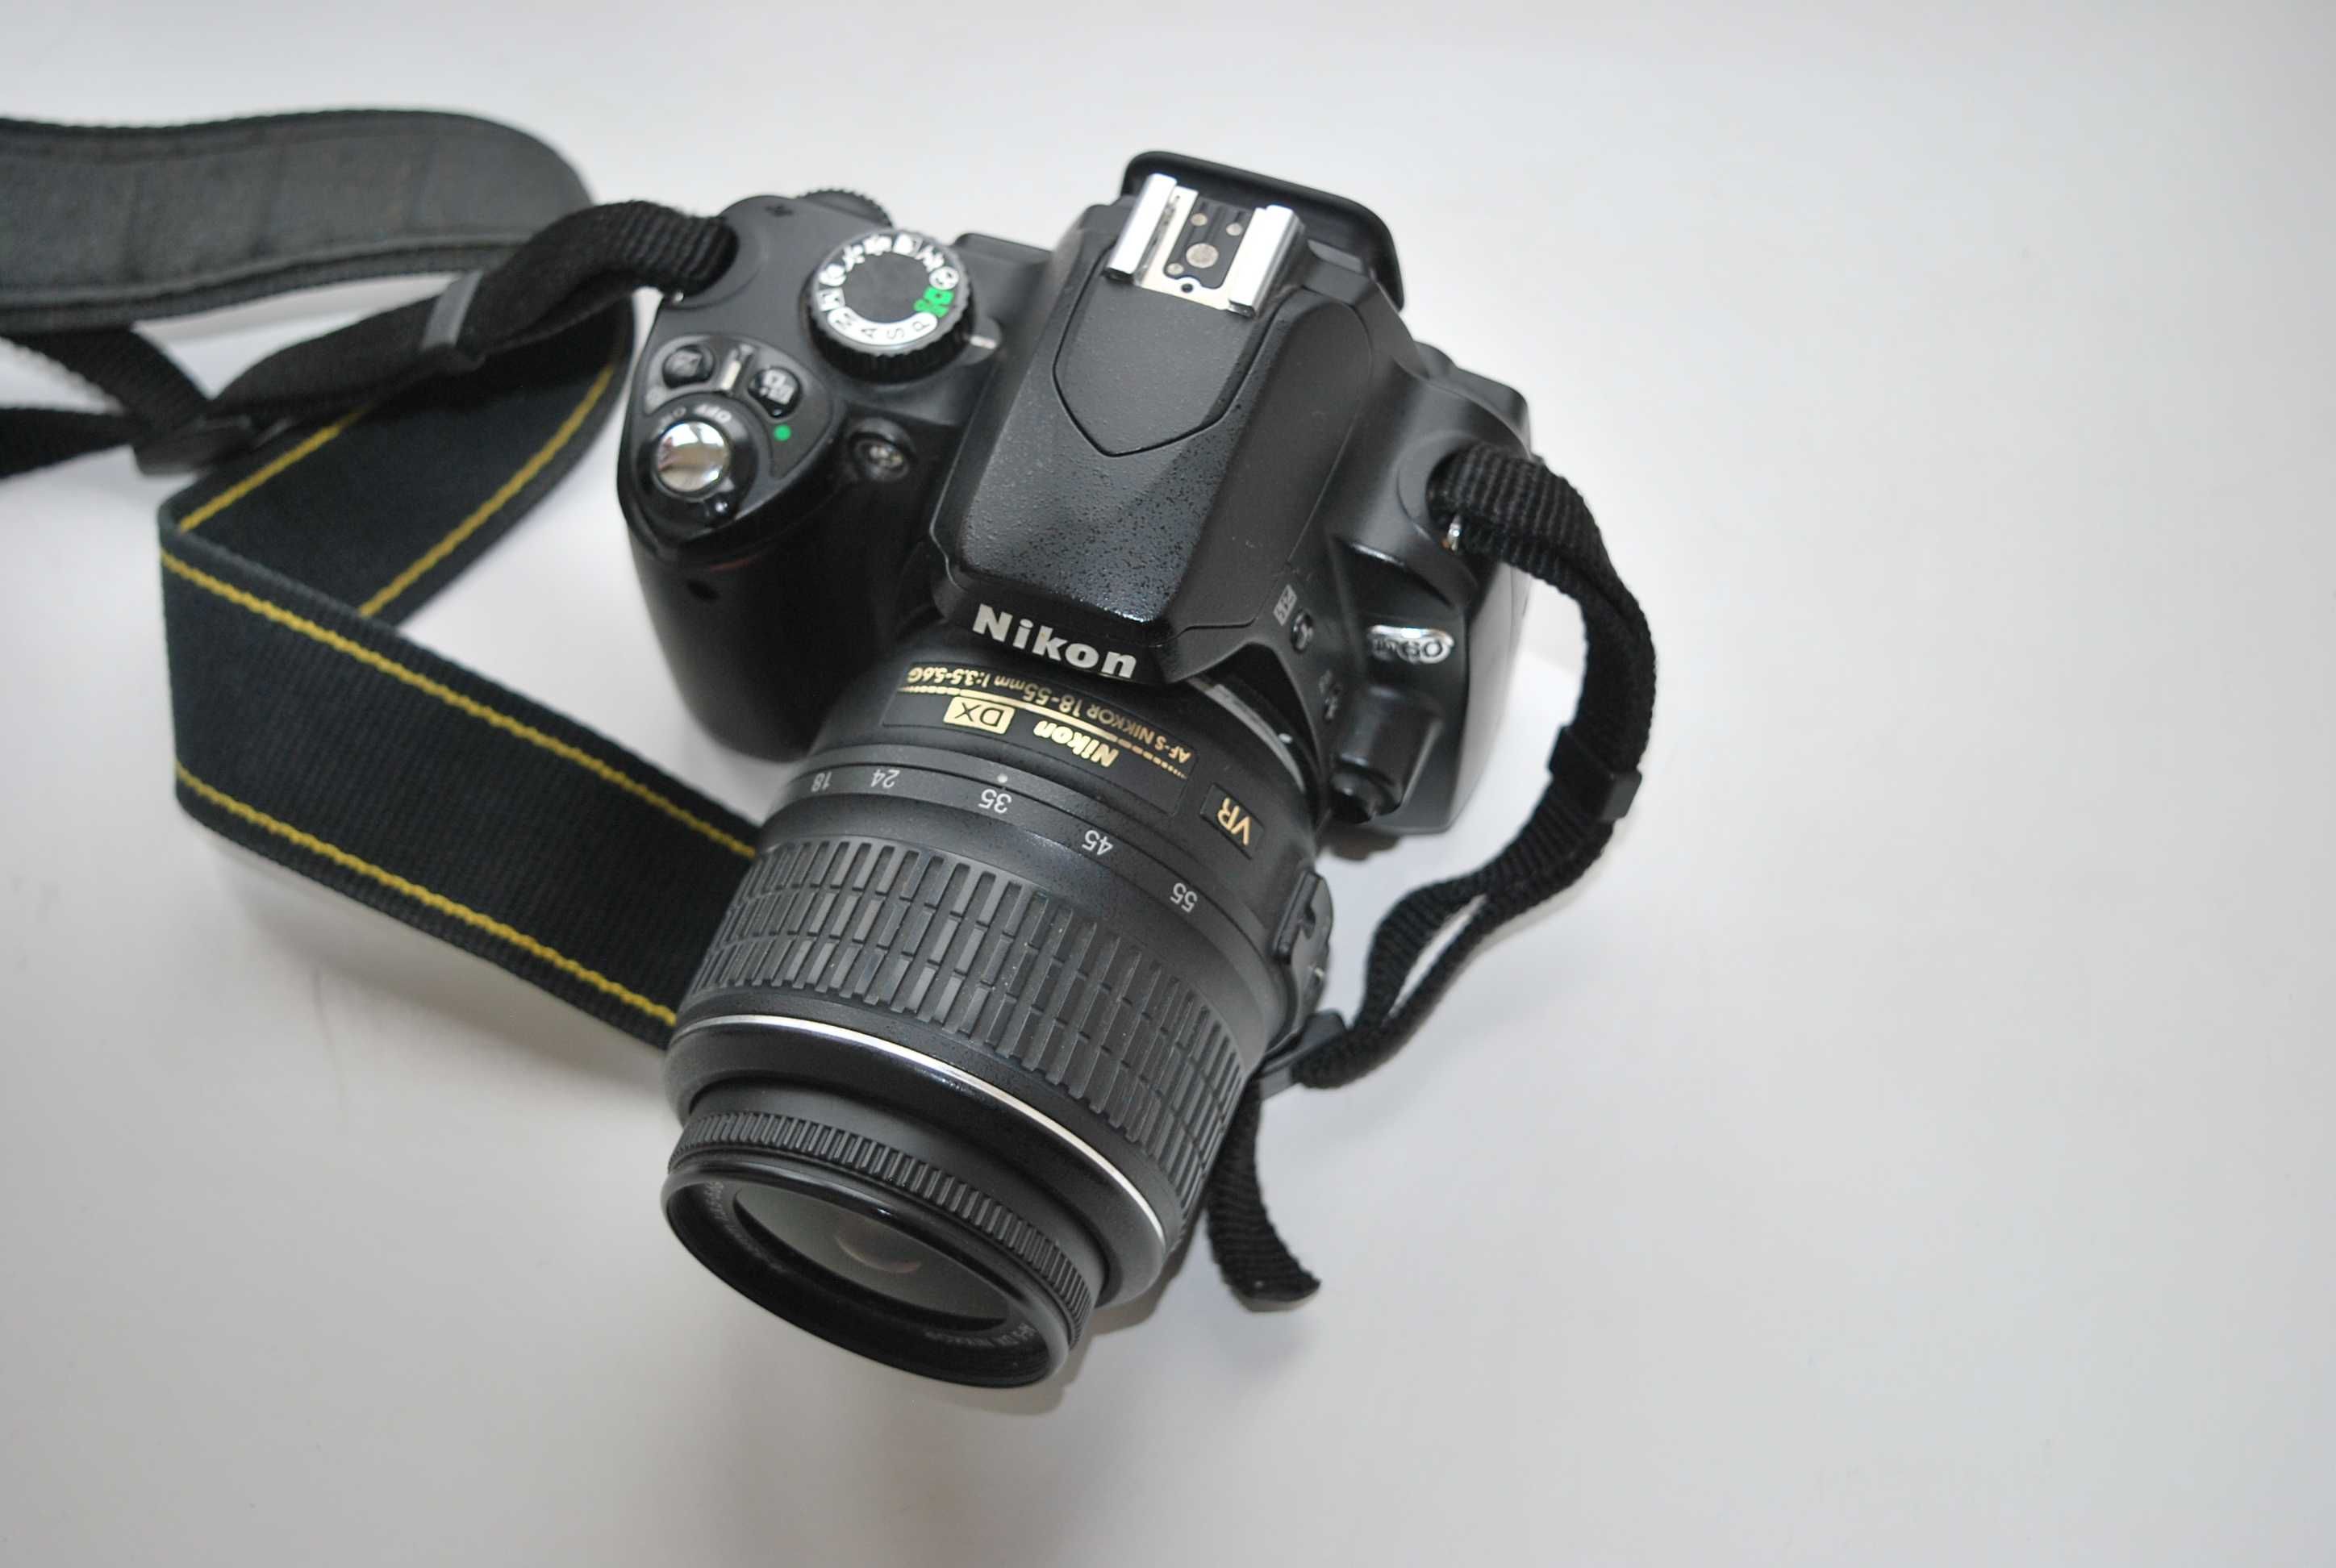 Фотоапарат Nikon D60